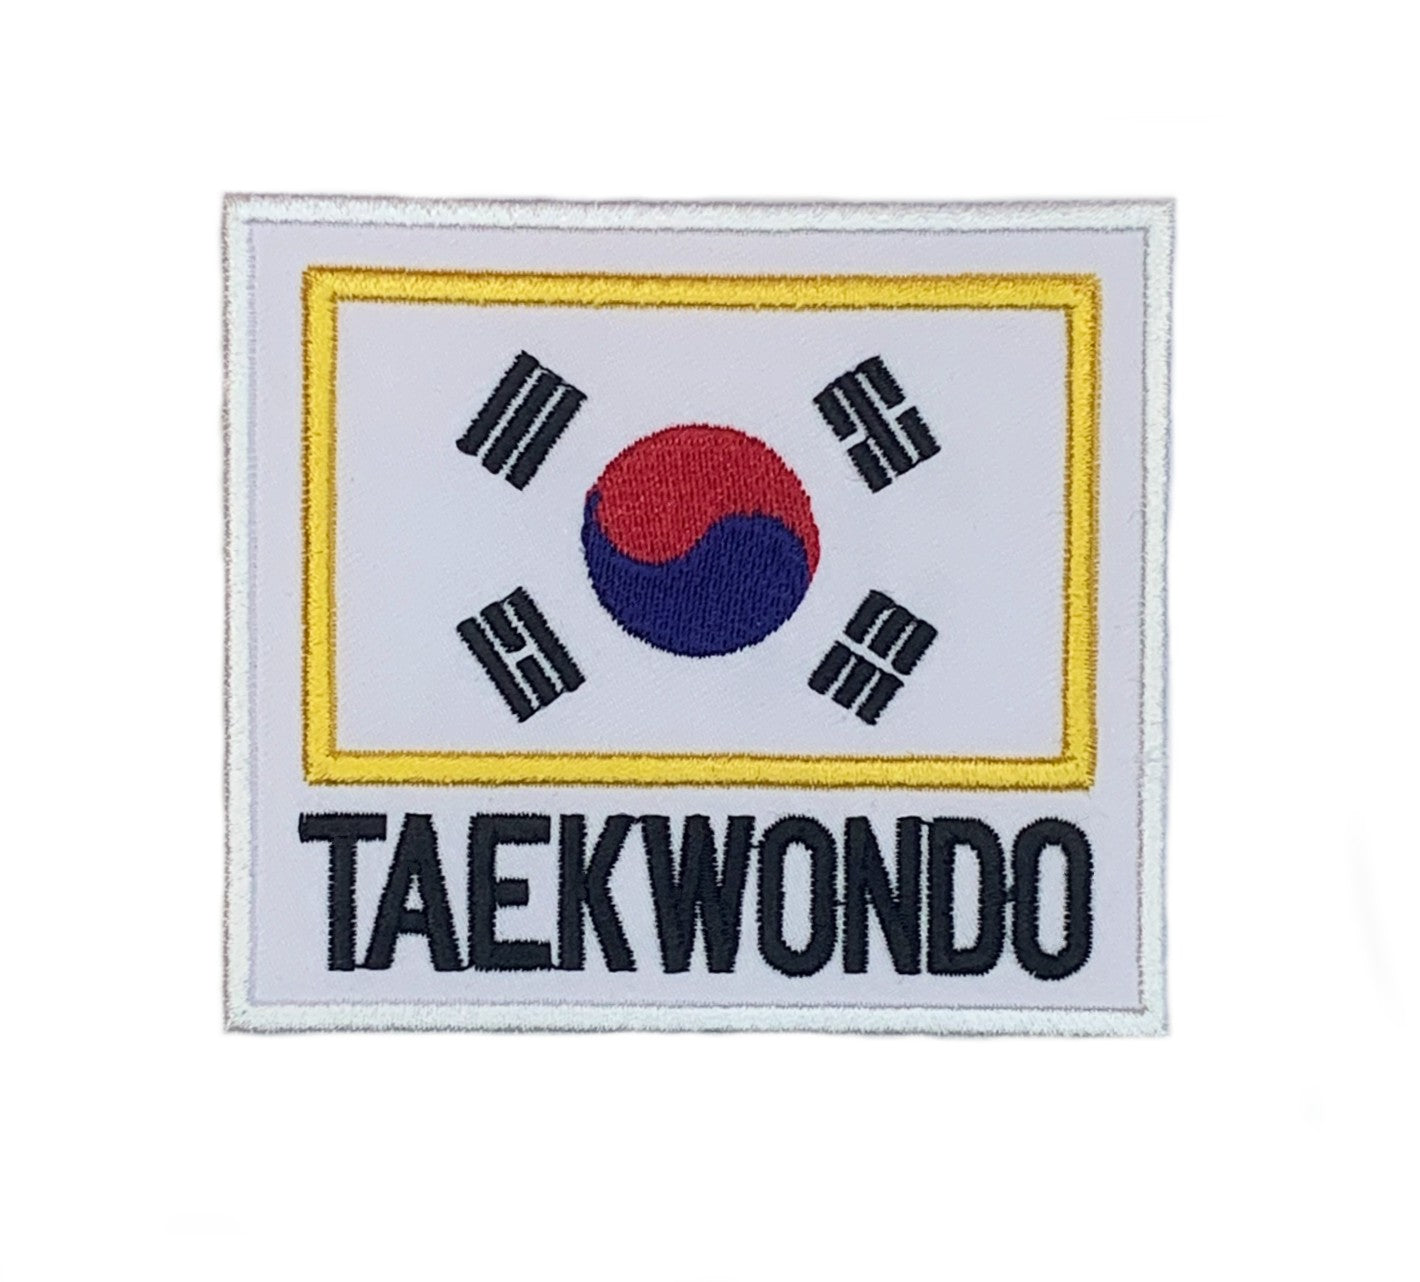 Taekwondo Patch (3.5 Inch) Iron/Sew-on Badge South Korea Flag Crest Emblem Kimono